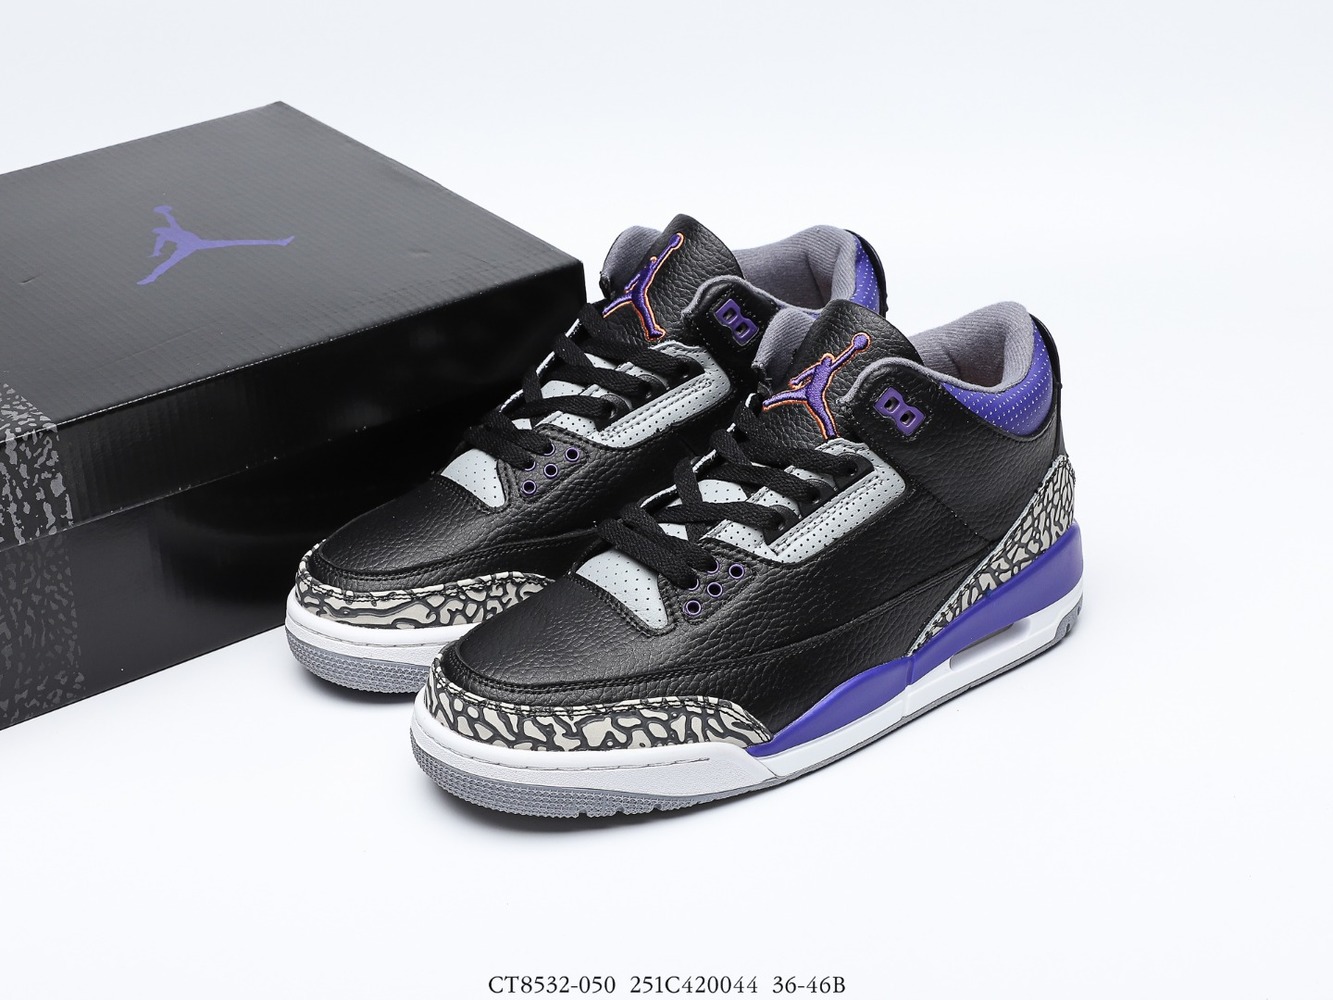 Air Jordan 3 Retro
Black Court Purple CT8532-050